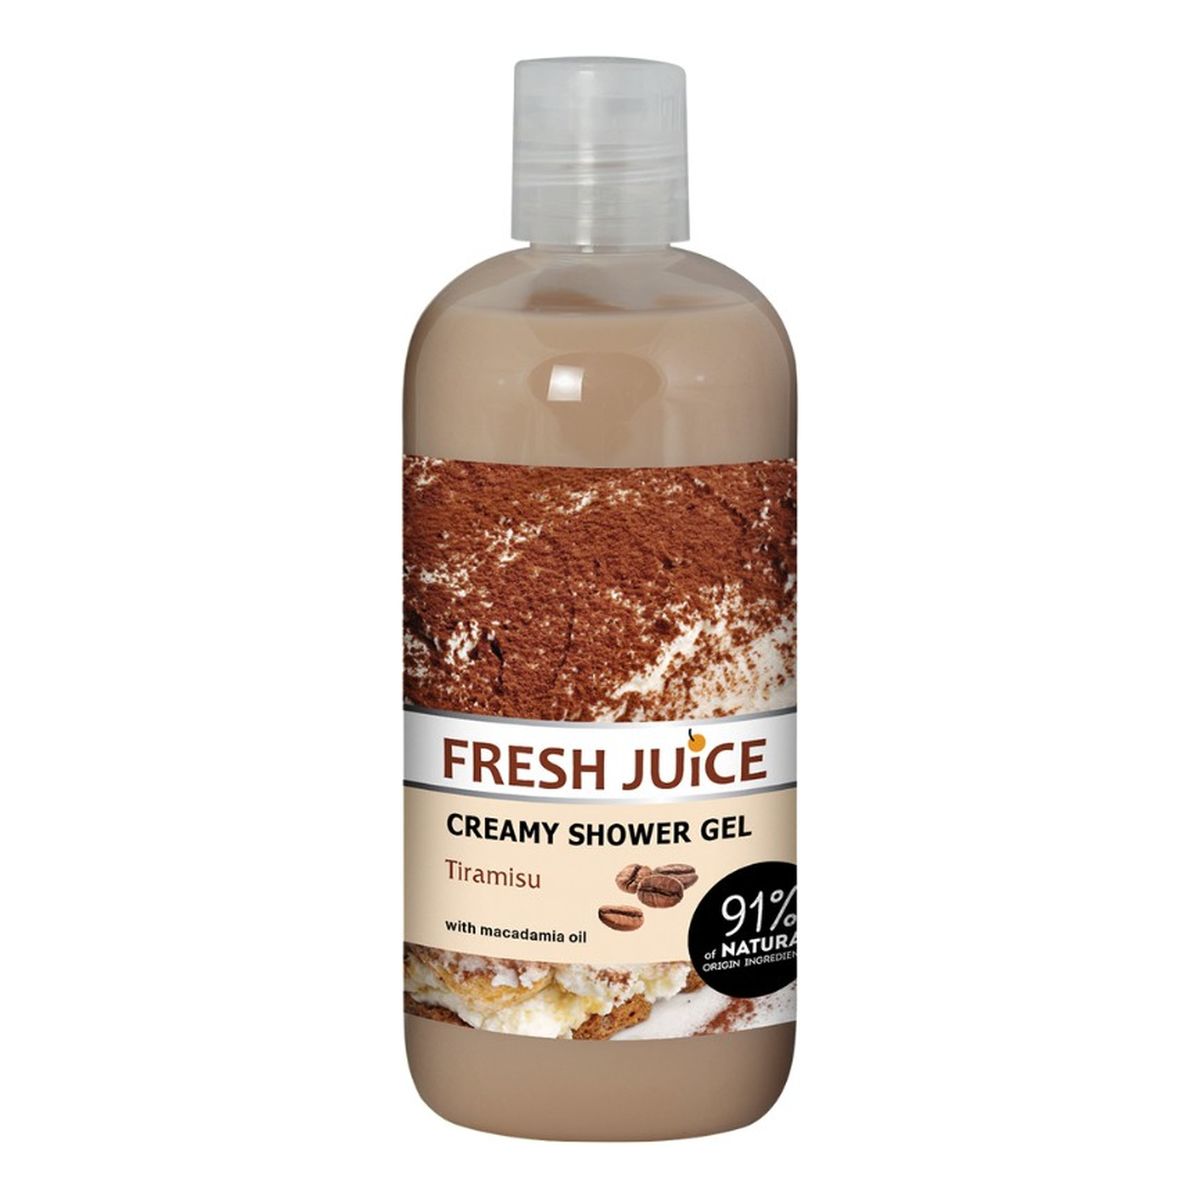 Fresh Juice Kremowy żel pod prysznic Tiramisu 500ml